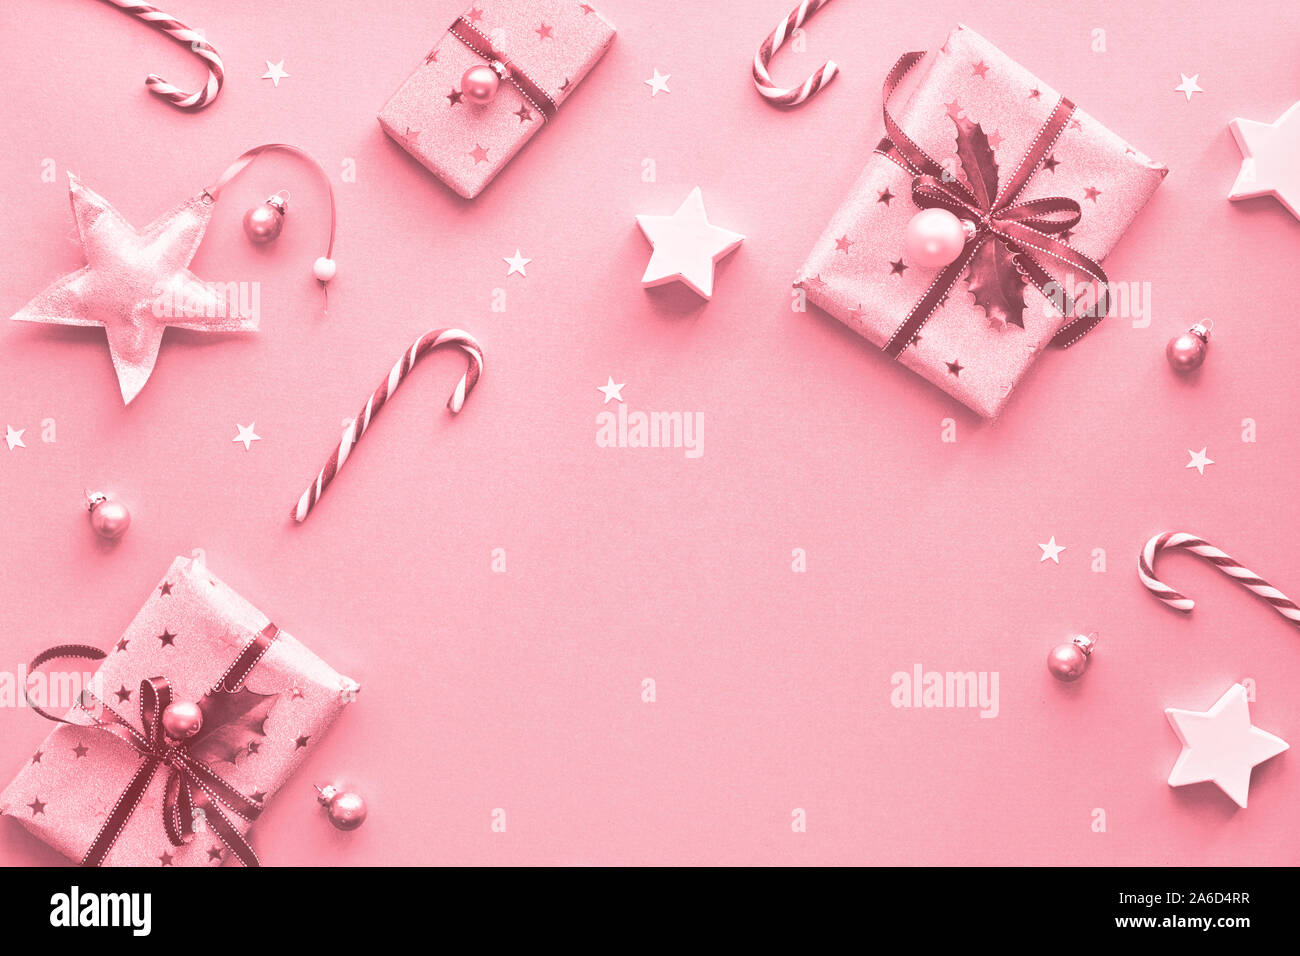 Bạn đang tìm kiếm những hộp quà Giáng Sinh màu hồng độc đáo và đẹp mắt? Chúng tôi có những hộp quà tuyệt đẹp và sẽ 100% làm hài lòng bạn.